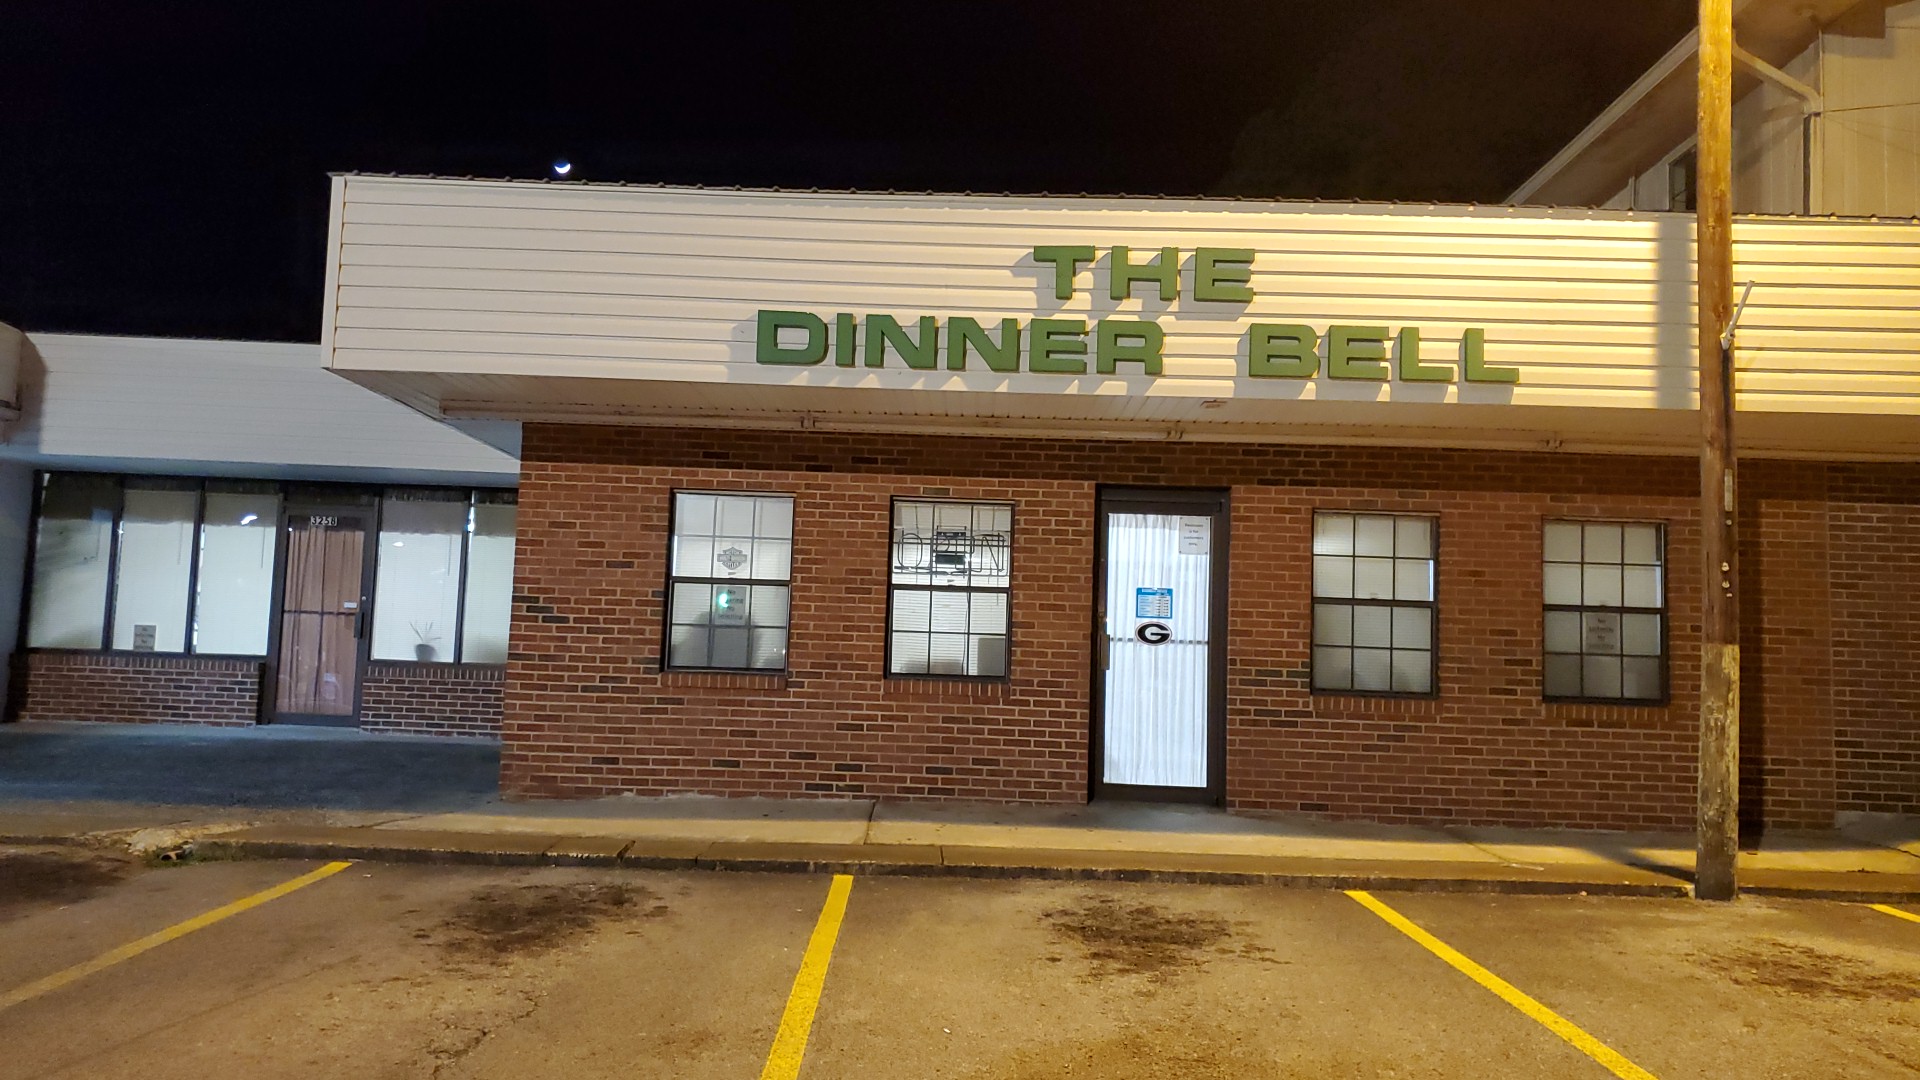 The Dinner Bell